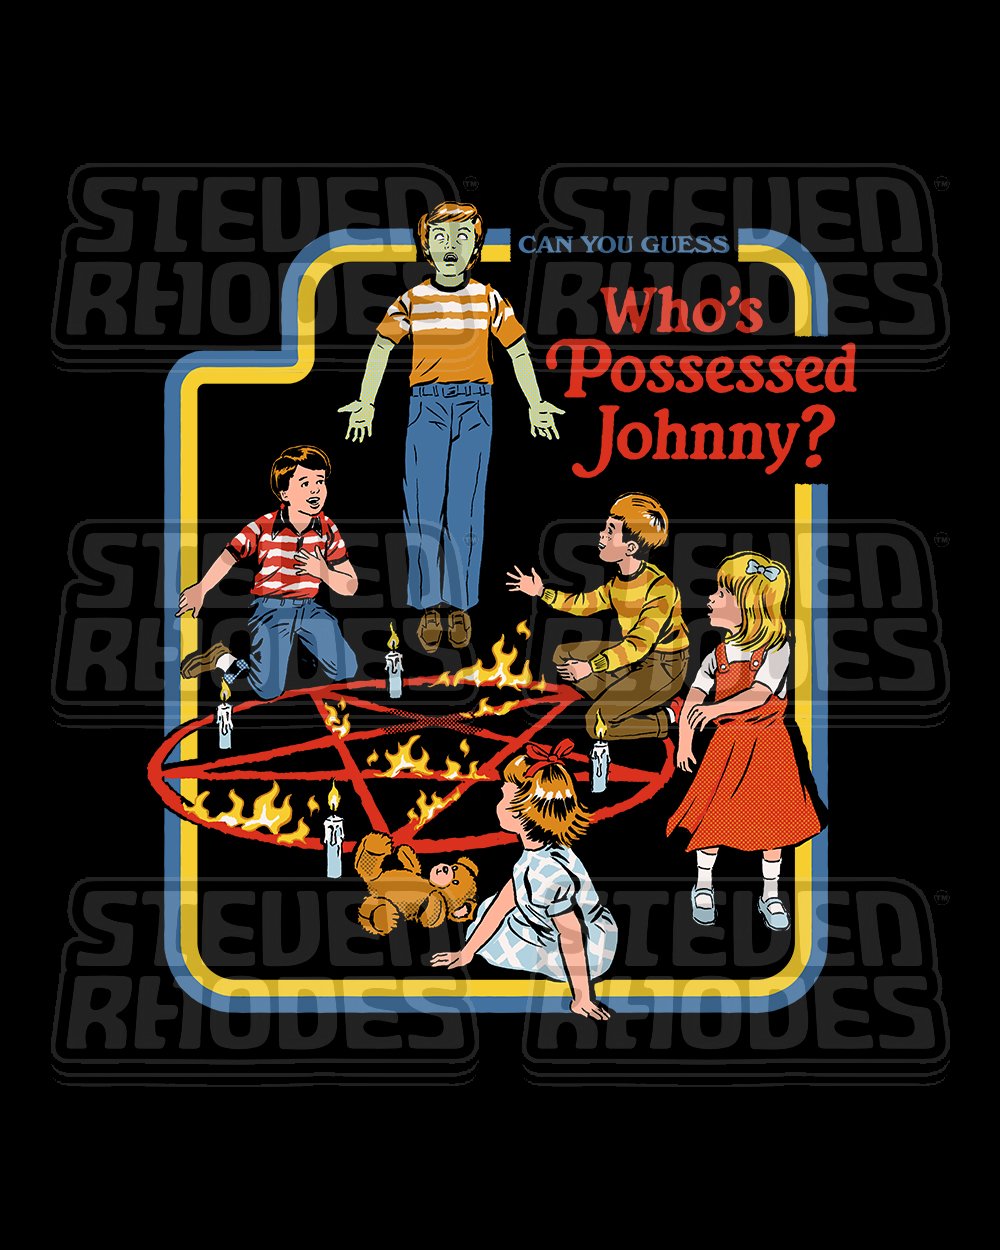 Who's Possessed Johnny? T-Shirt Australia Online #colour_black